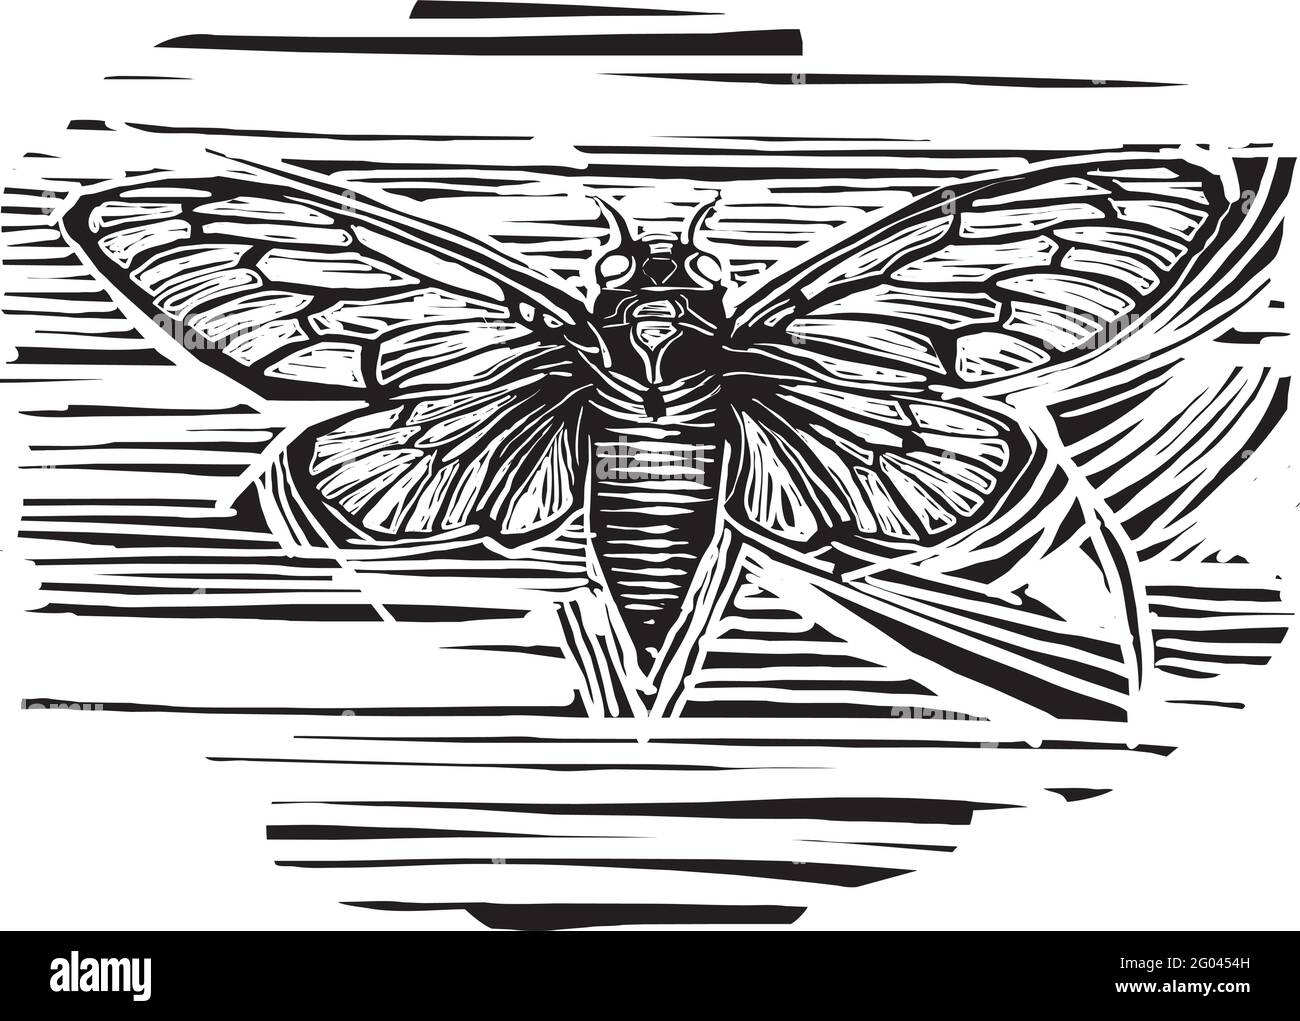 Grabado en madera de estilo expresionista de Brood X Cicada con sus las alas se extienden Ilustración del Vector